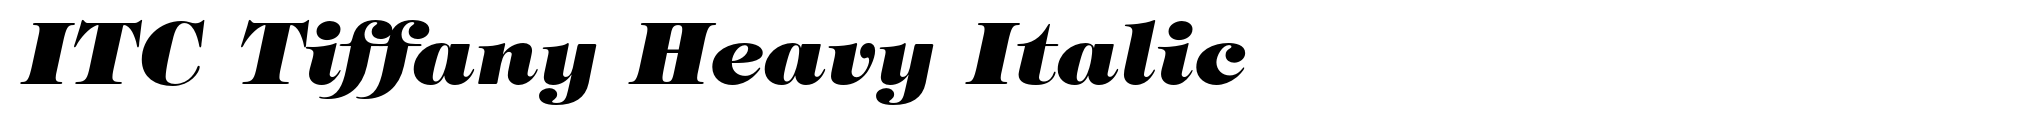 ITC Tiffany Heavy Italic image